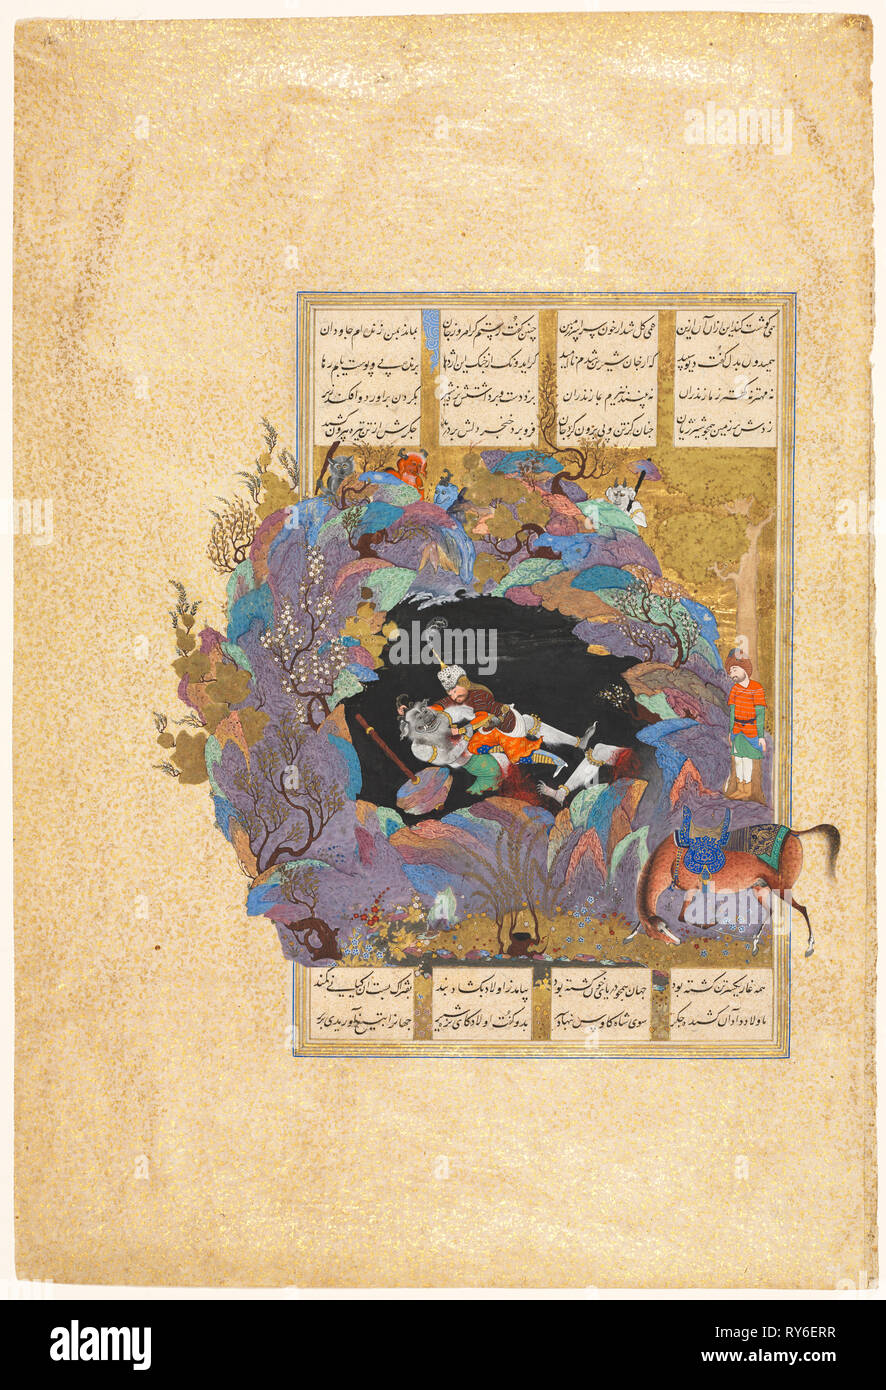 Rustam il settimo corso: egli uccide il White Div, folio 124 da un Shah-nama (Libro dei Re) di Firdausi (Persiano, circa 934-1020), 1522-1537. Attribuito a Abd al-Vahhab (Persiano, attivo circa 1516), attribuita a Mir Musavvir (iraniano, c. 1510-1555). Acquerello opaco, oro e argento su carta; foglio: 47,5 x 32,2 cm (18 11/16 x 12 11/16 in.); immagine: 28,4 x 18,5 cm (11 3/16 x 7 5/16" Foto Stock